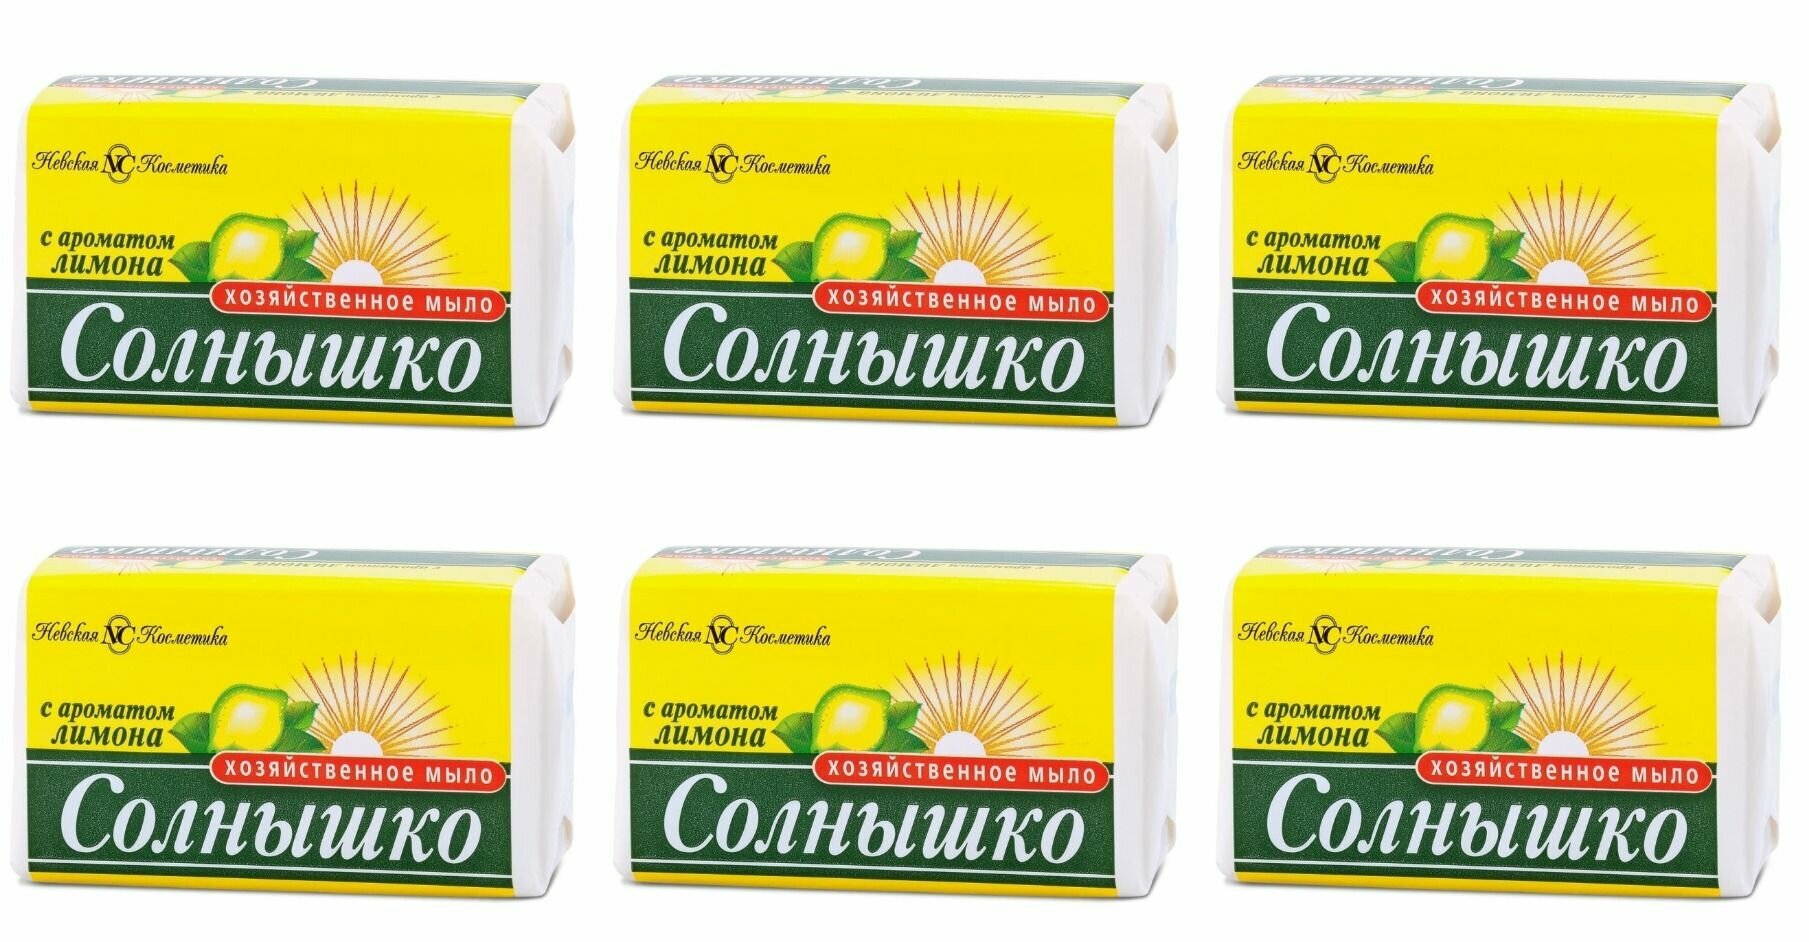 Невская косметика Хозяйственное мыло солнышко, с ароматом лимона, 140 гр, 6 шт